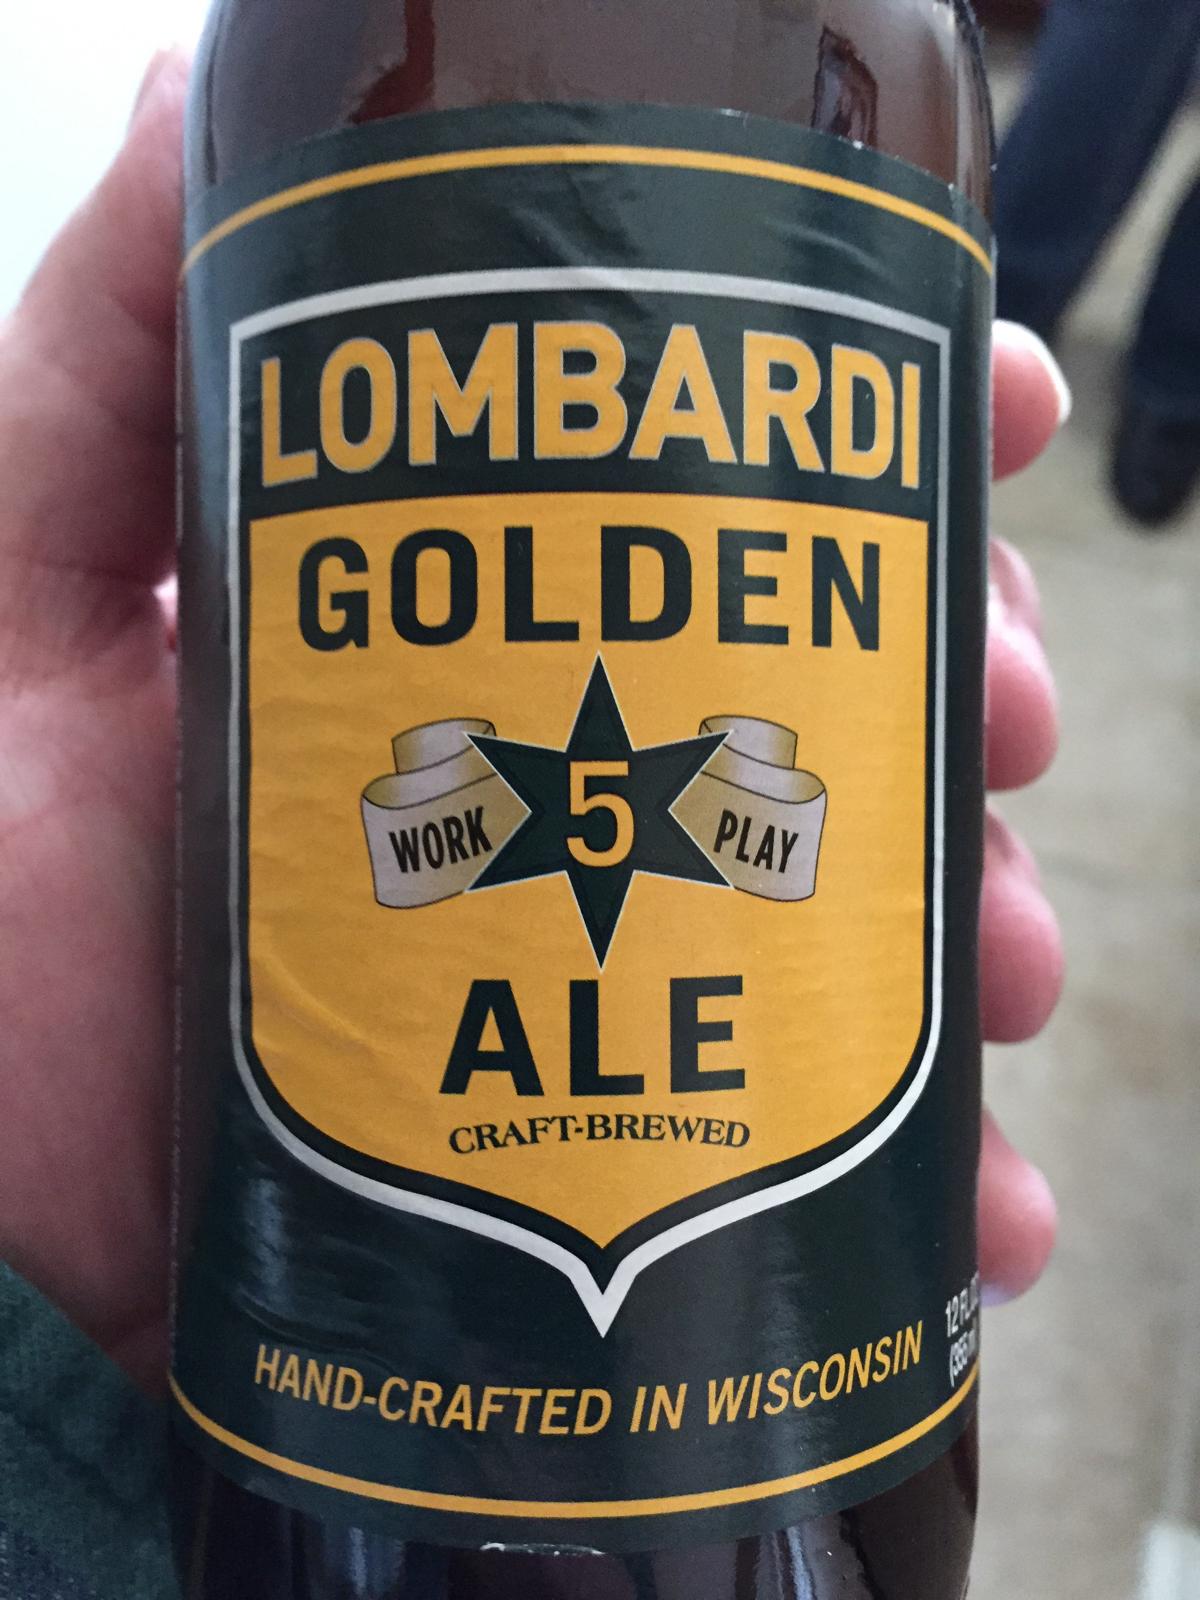 Lombardi Golden Ale